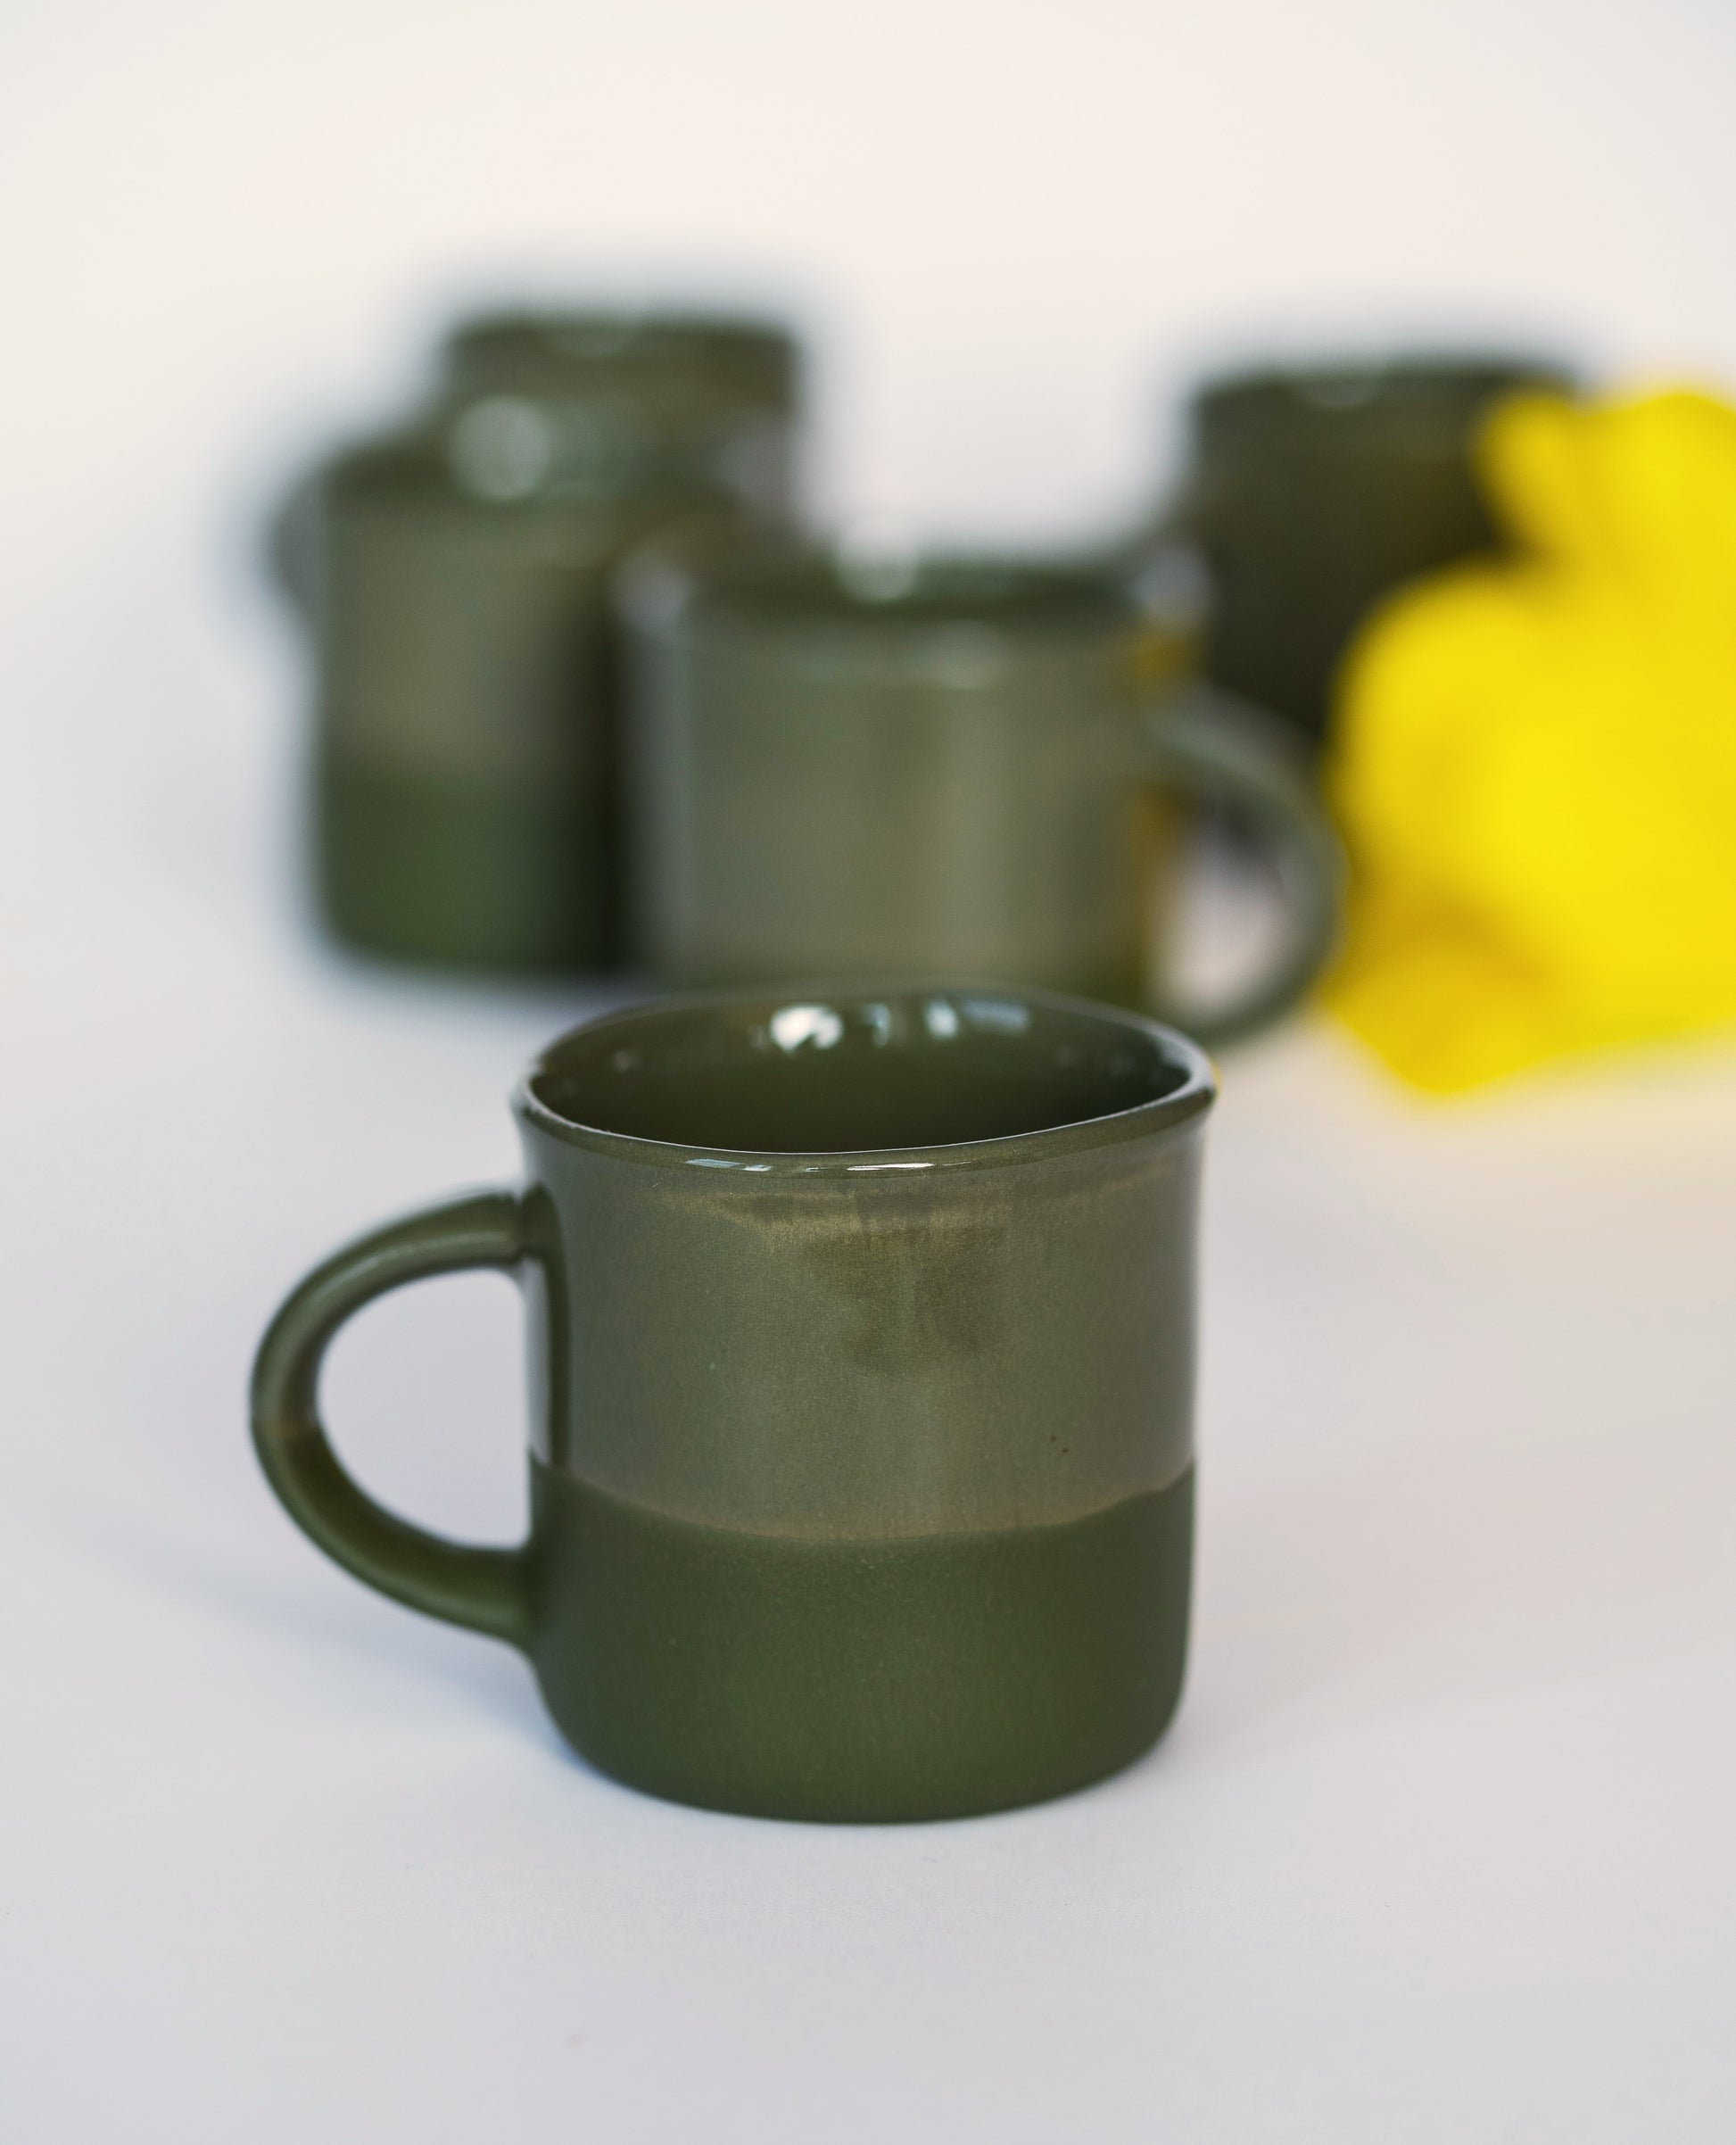 Prestige Set of 2 Transparent Green Espresso Cups